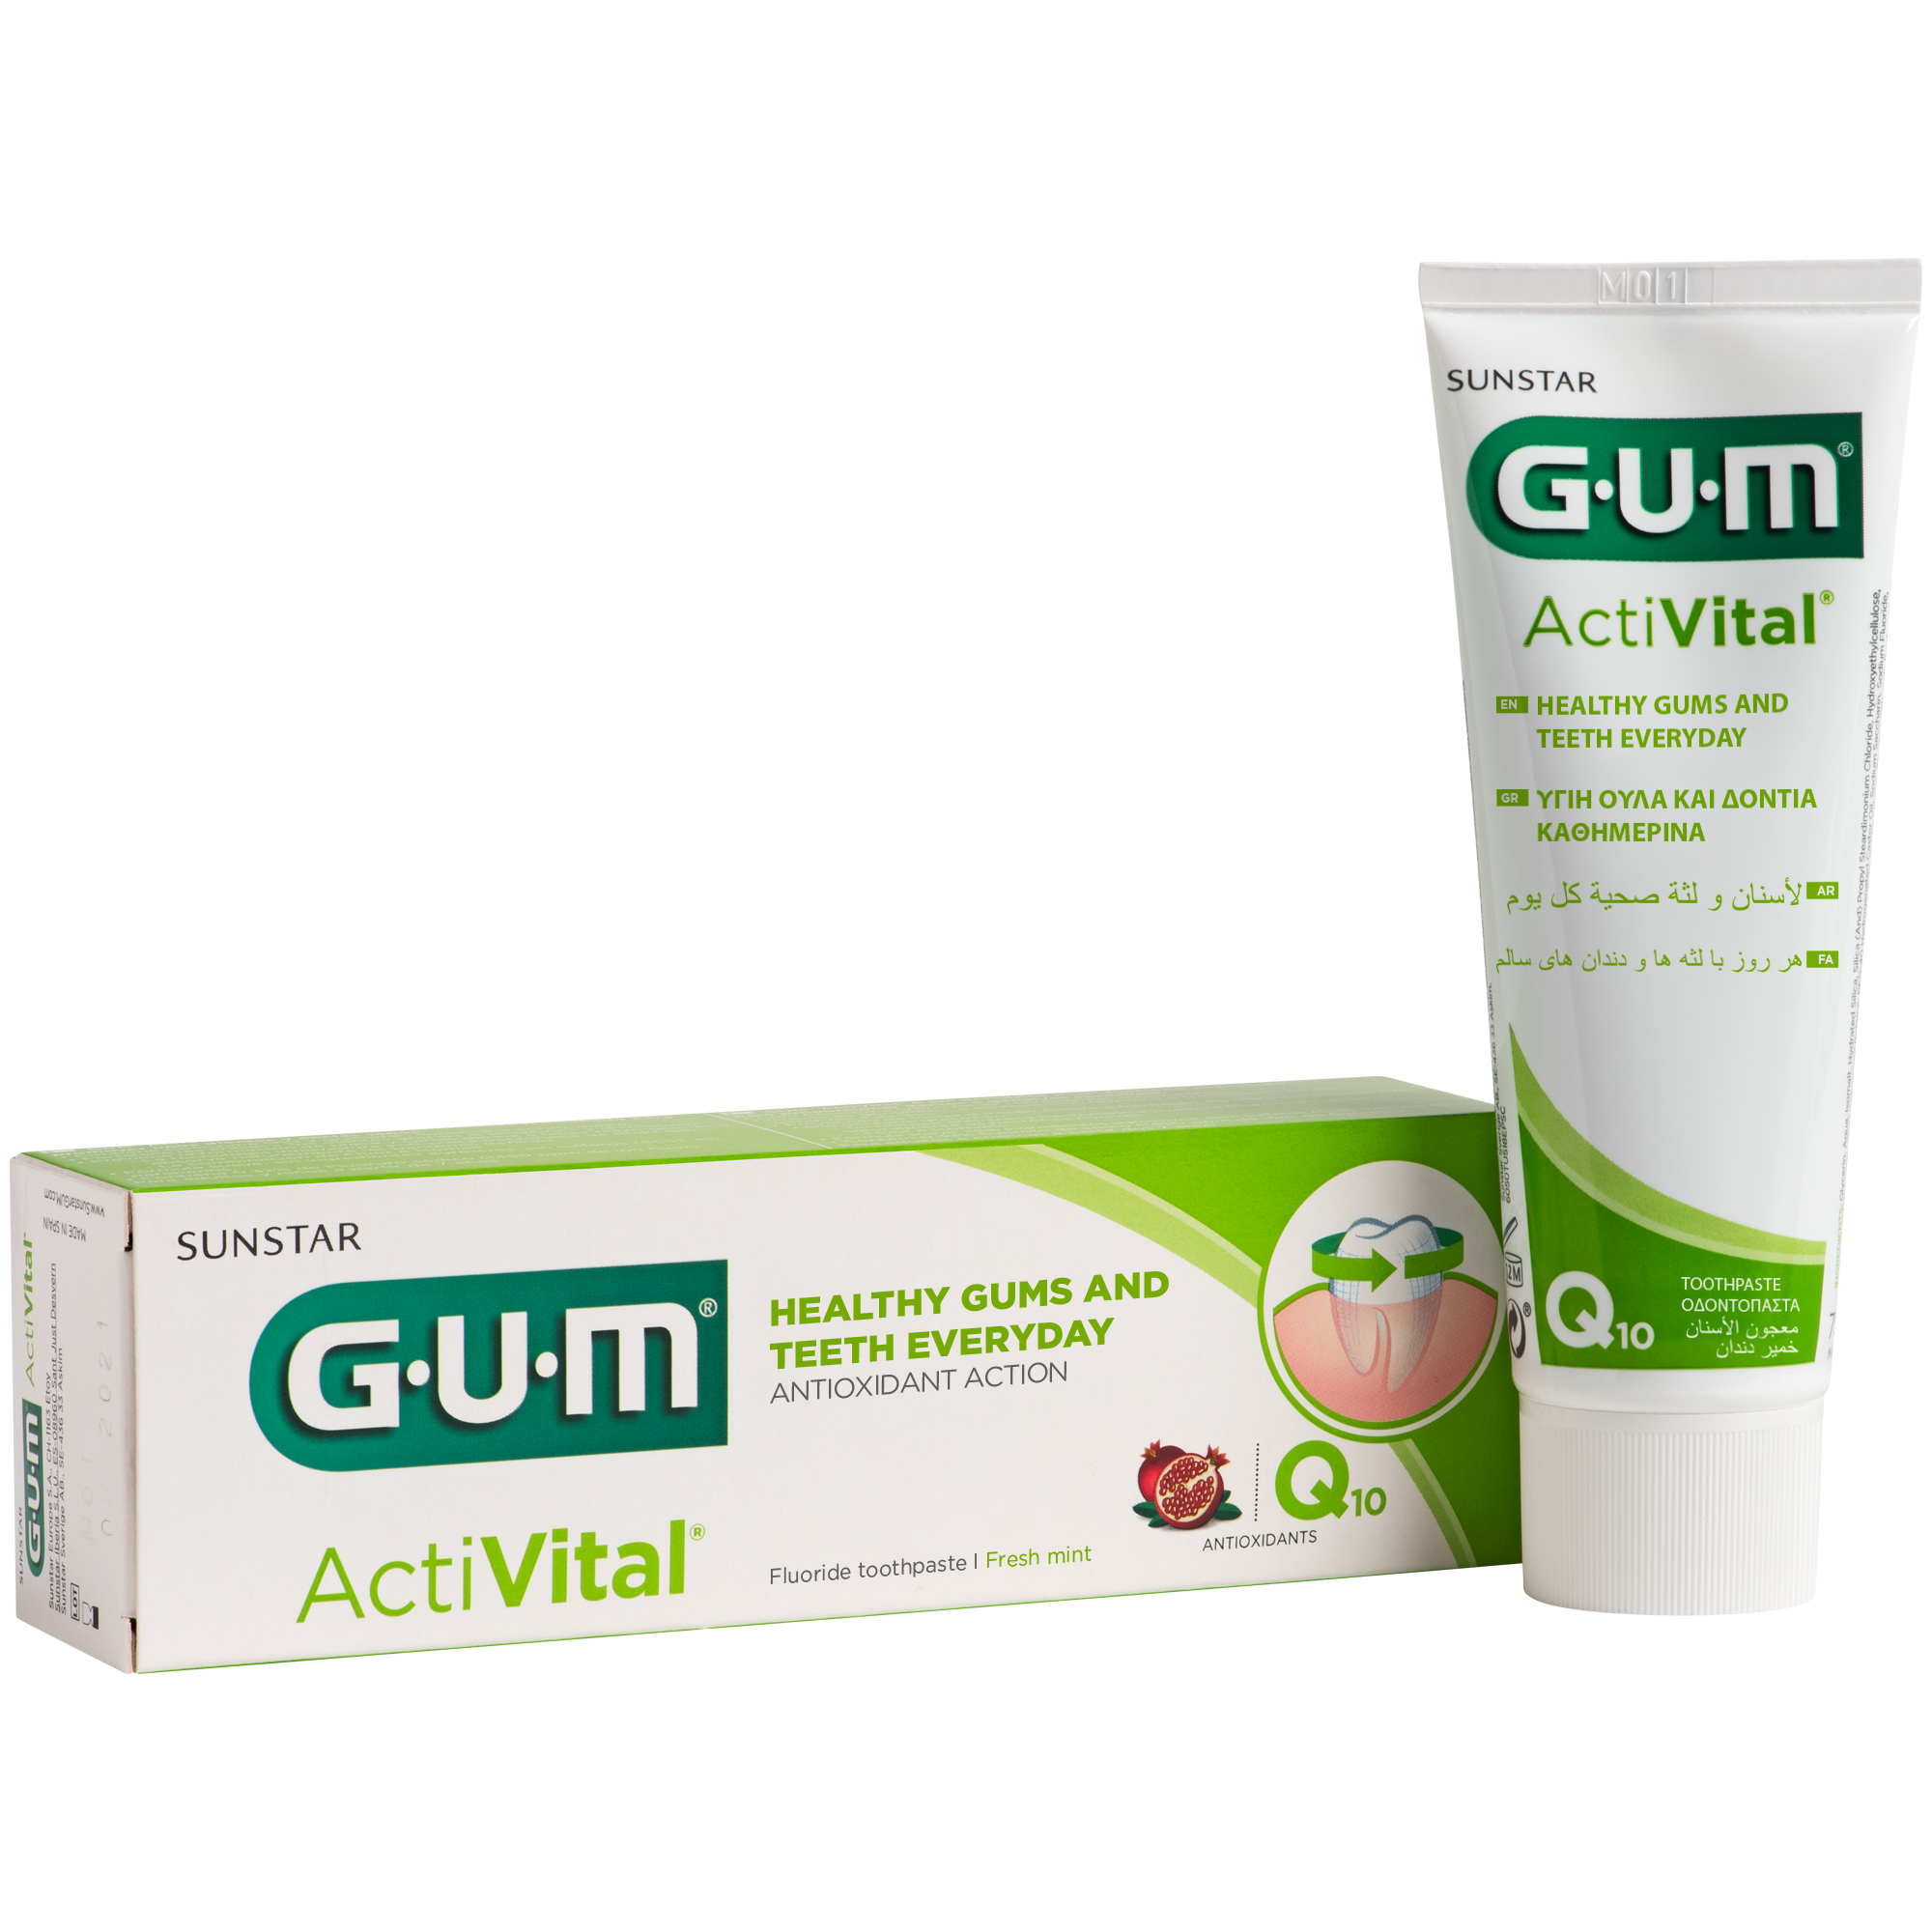 P6050-BDU-GUM-Activital-Toothpaste-75ml-Box-Tube